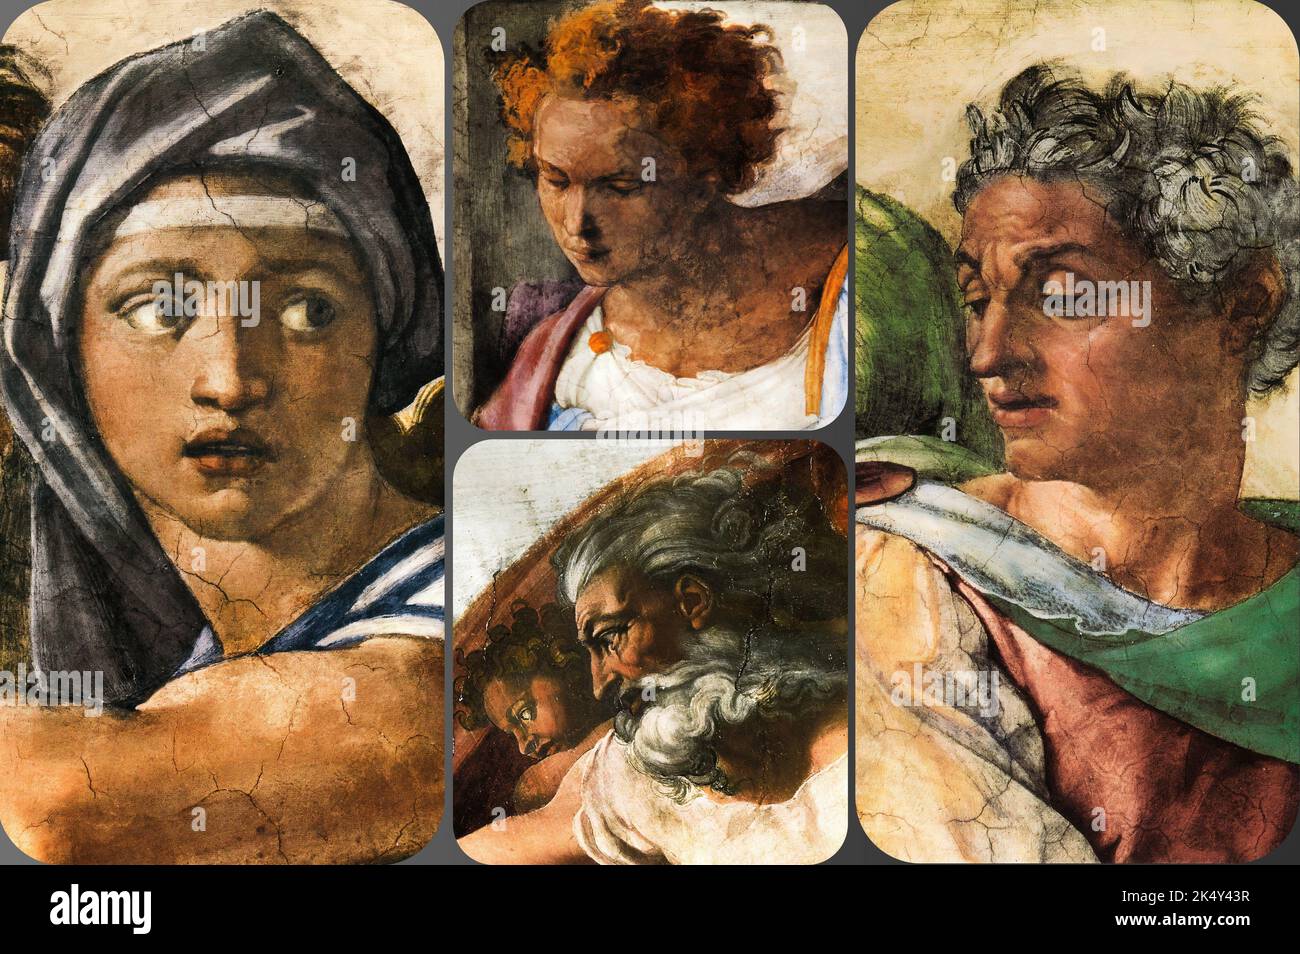 Alcuni dettagli del famoso capolavoro - la creazione di Adamo di Michelangelo nella Cappella Sistina, Vaticano, Roma, Italia Foto Stock